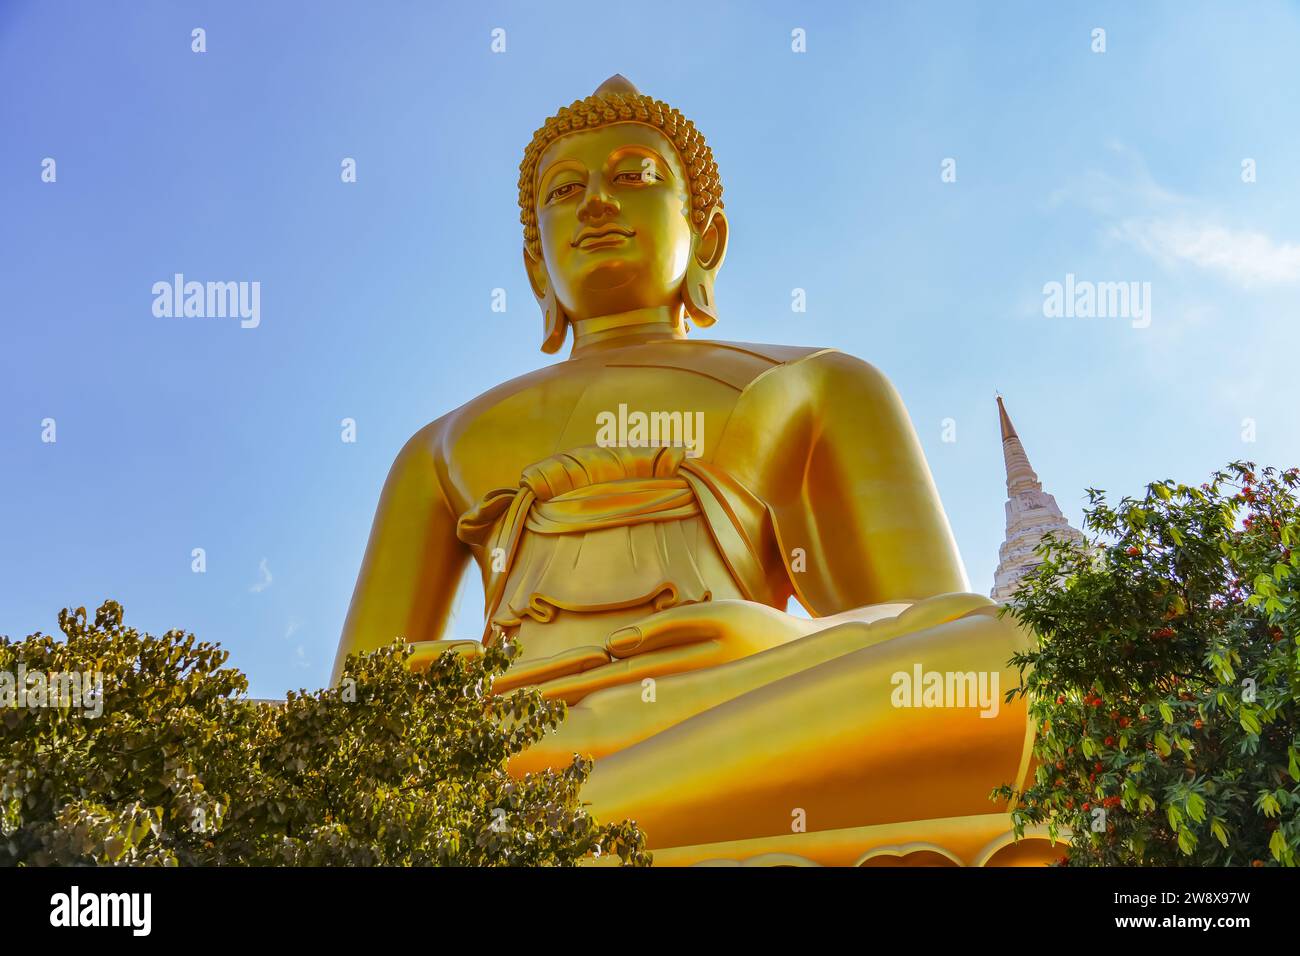 Big Buddha Dhammakaya Tep Mongkol Buddha of Paknam Bhasicharoen temple in Thonburi Stock Photo